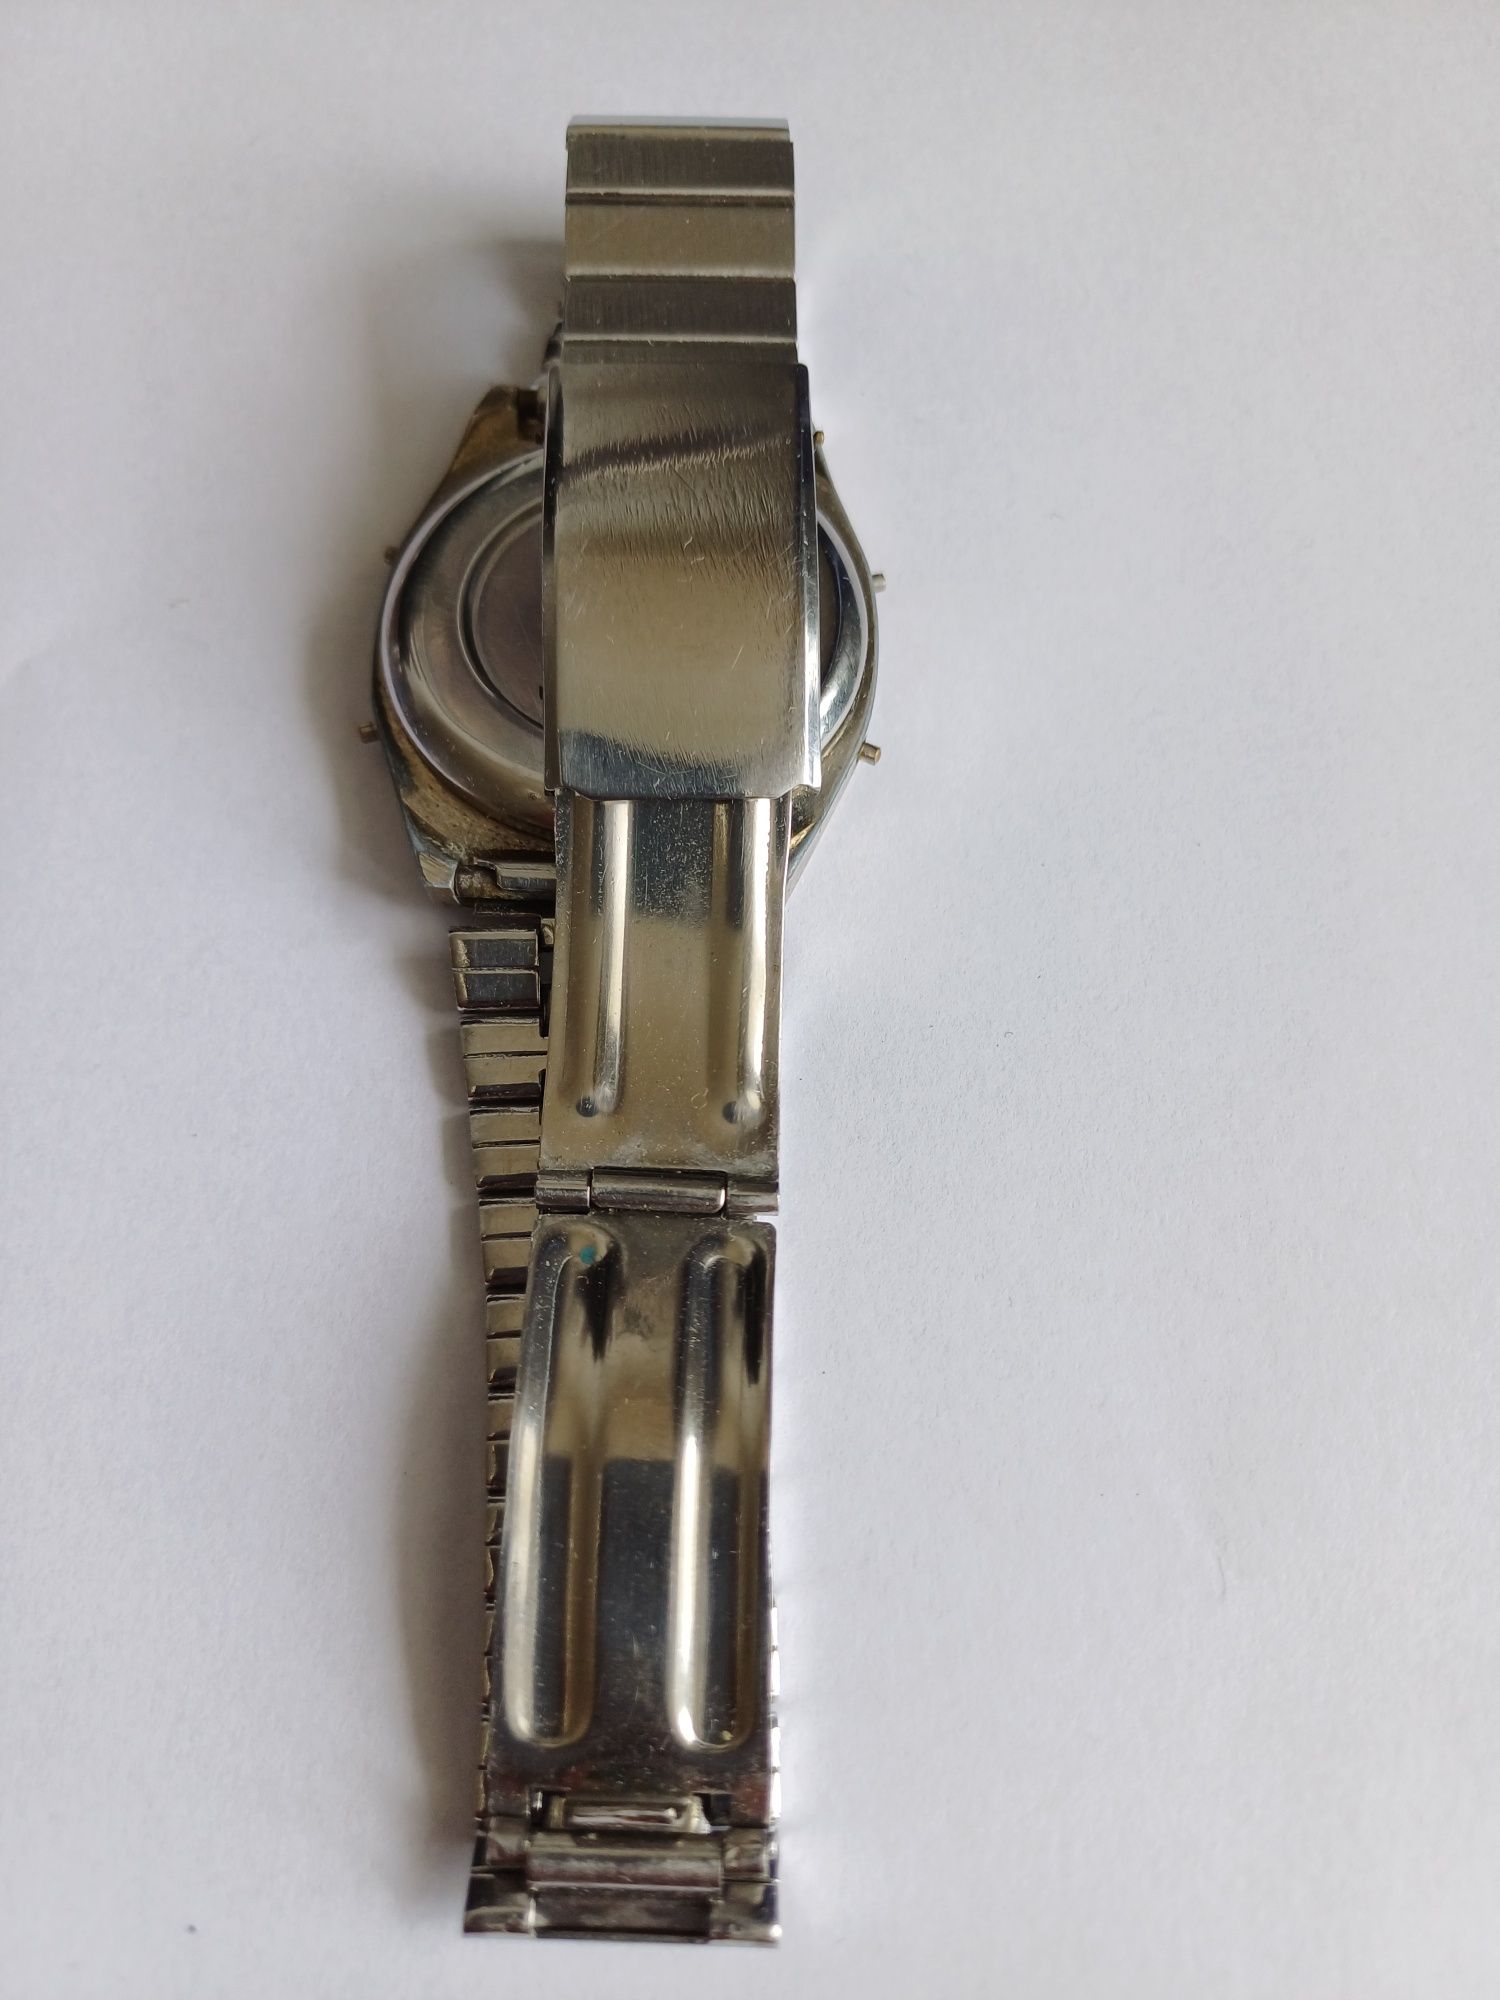 Zegarek elektroniczny Nelsonic - vintage - oryginał lata 80tych.